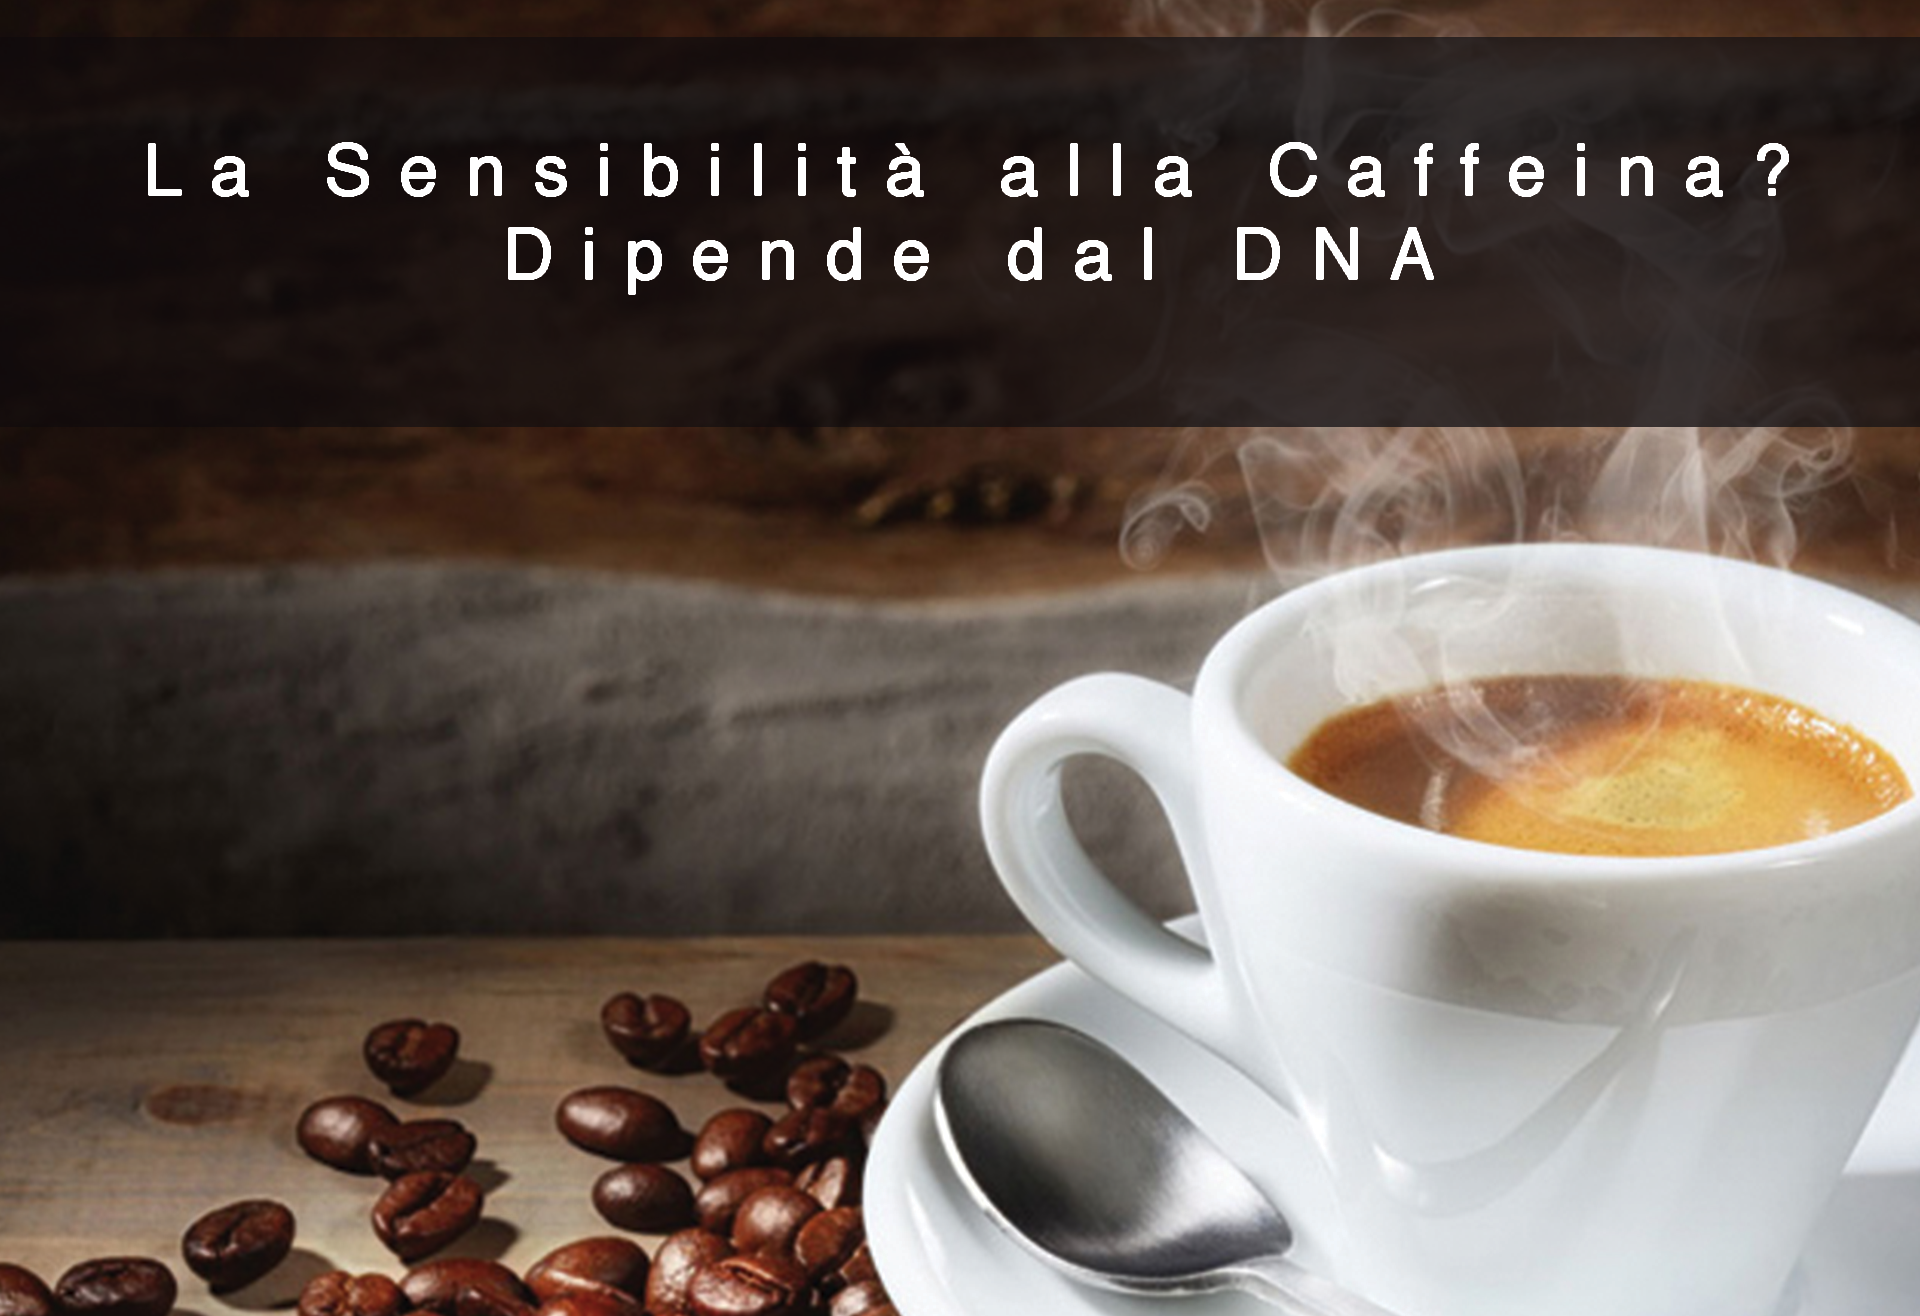 La Sensibilità alla Caffeina? Dipende dal DNA